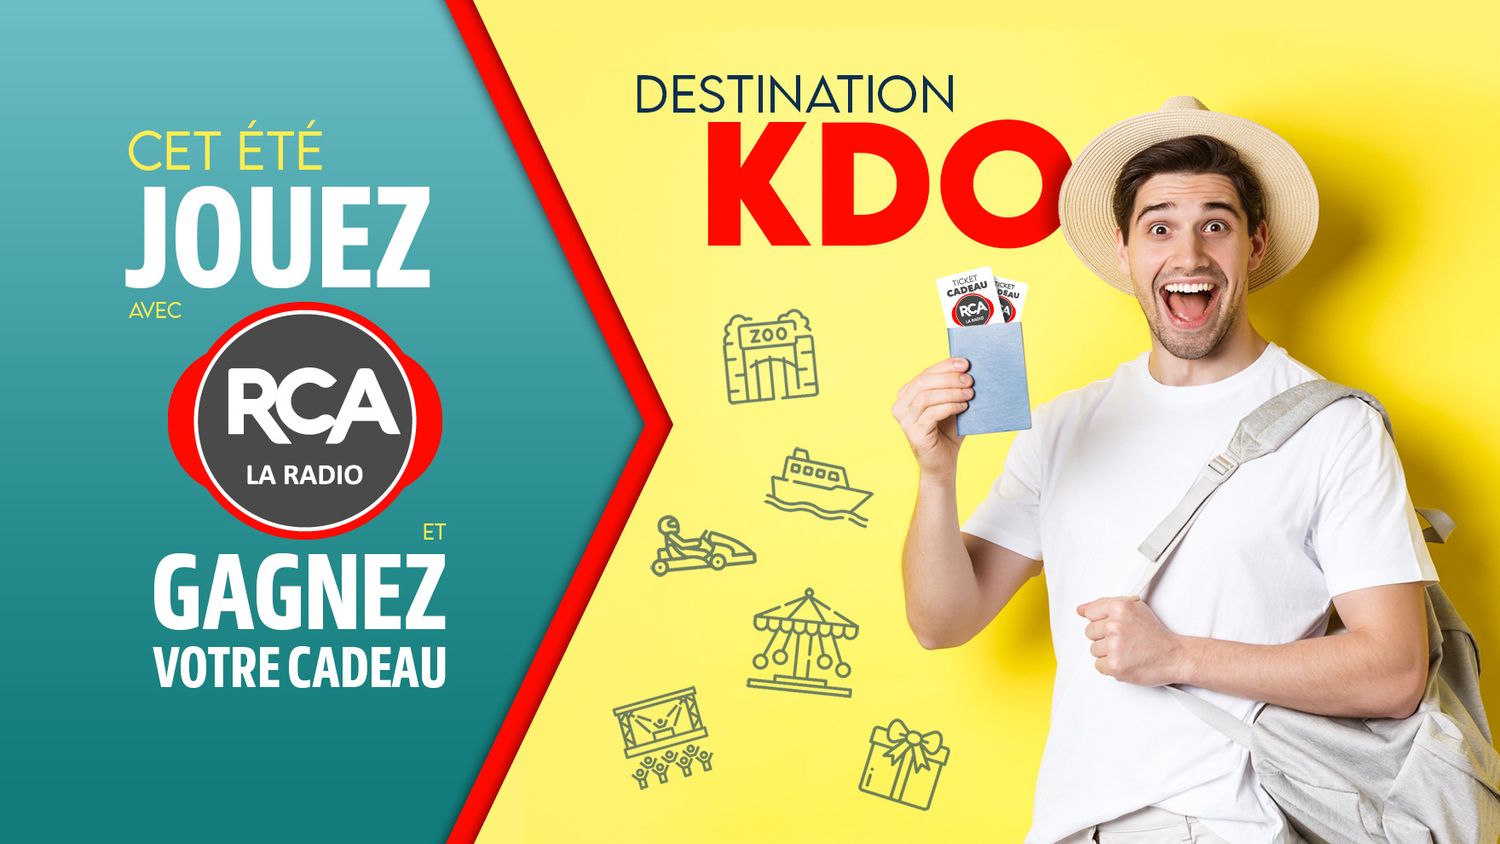 Destination KDO : le jeu de l'été sur RCA !